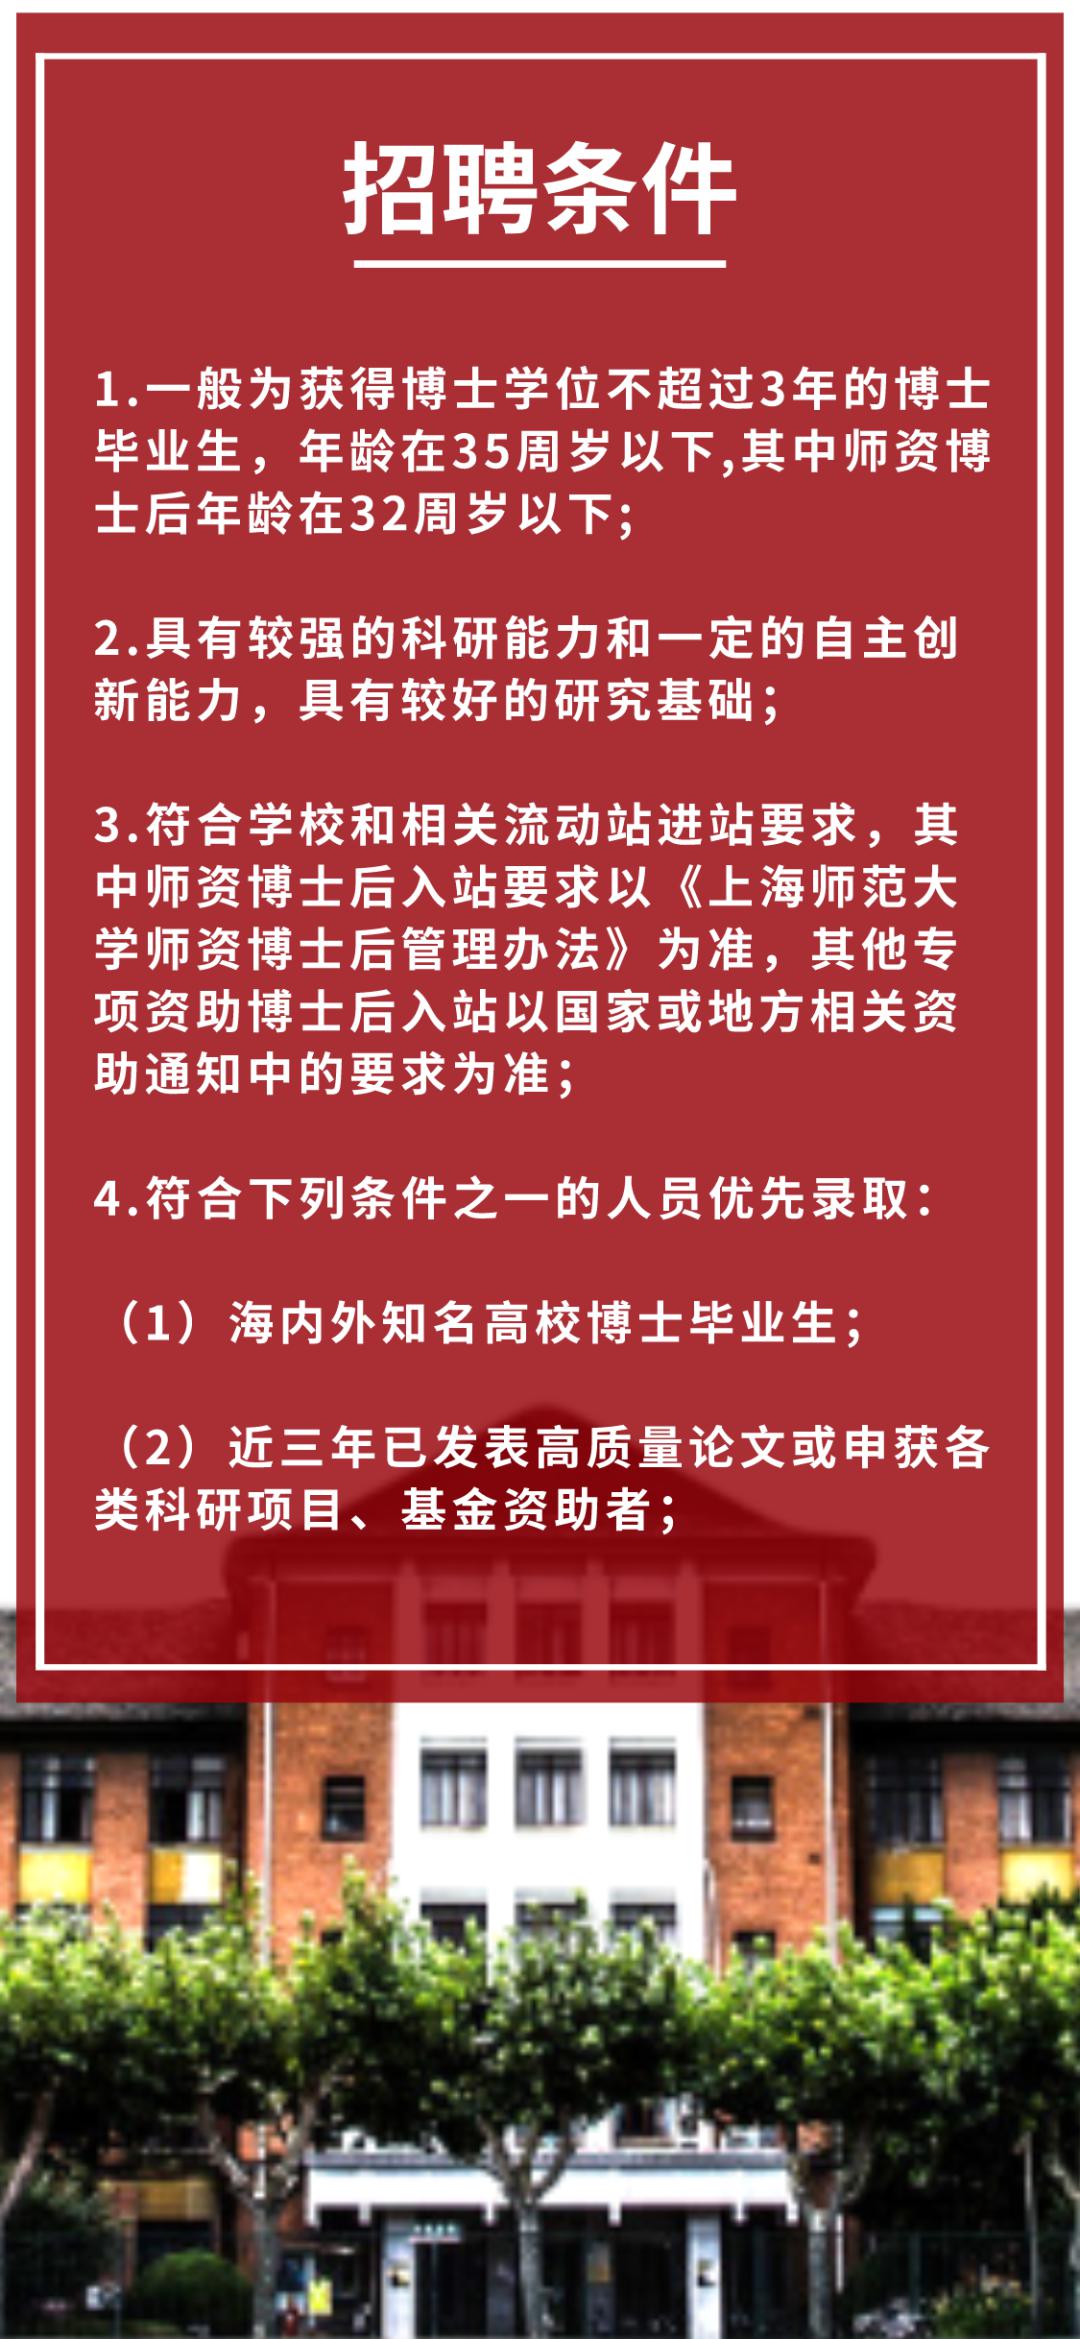 上海大学招聘_2014校园招聘上海站走进上大 复旦